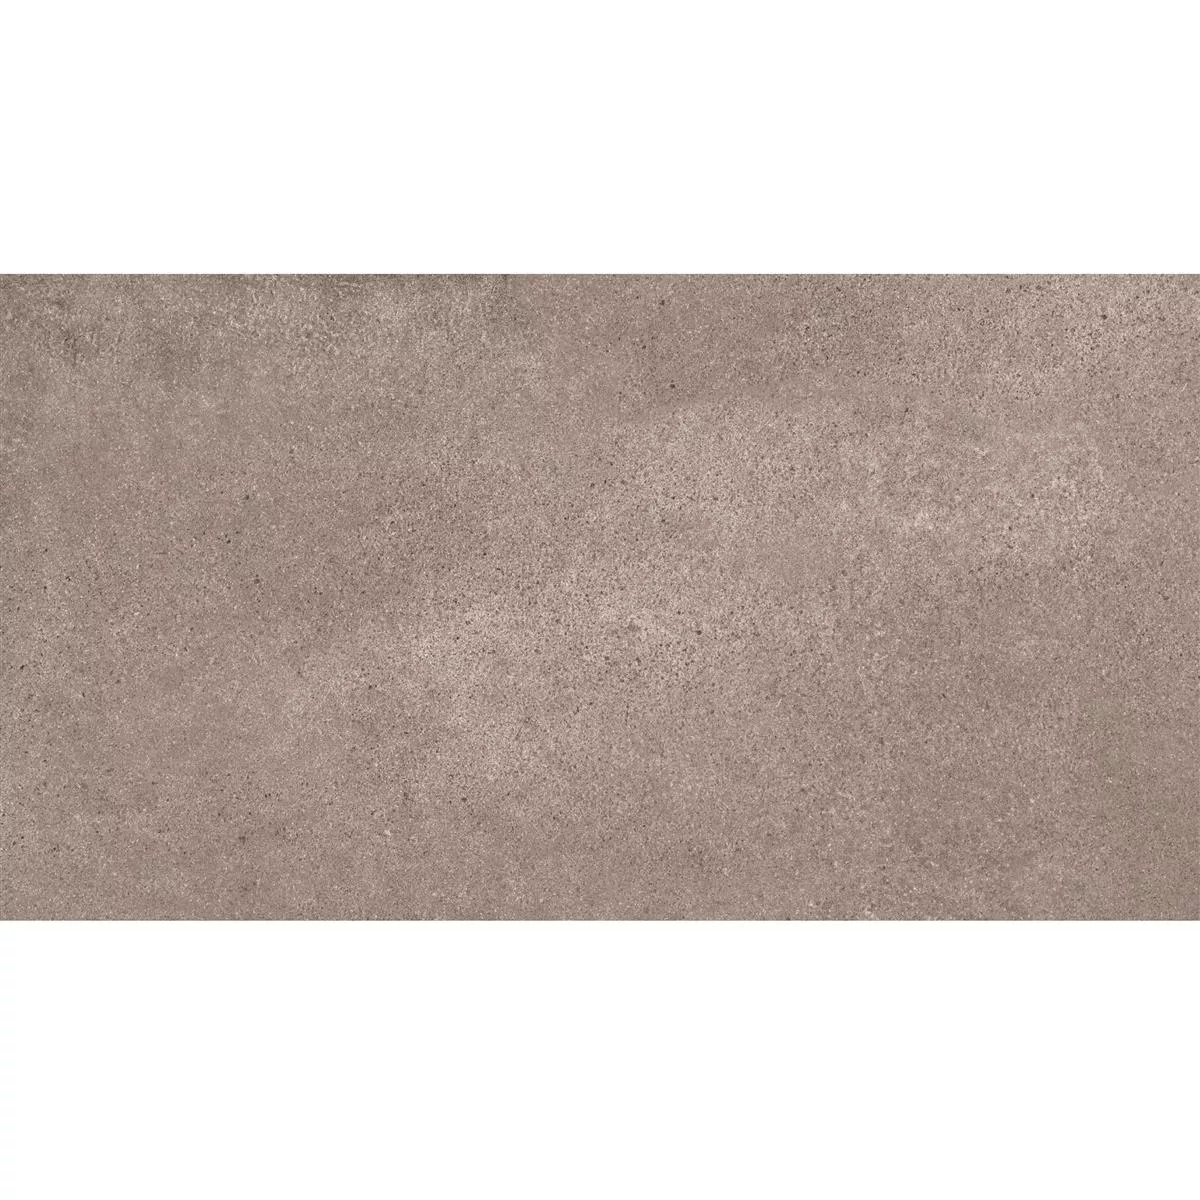 Πλακάκια Δαπέδου Πέτρινη Όψη Riad Παγωμένος R9 Kαφέ 30x60cm 